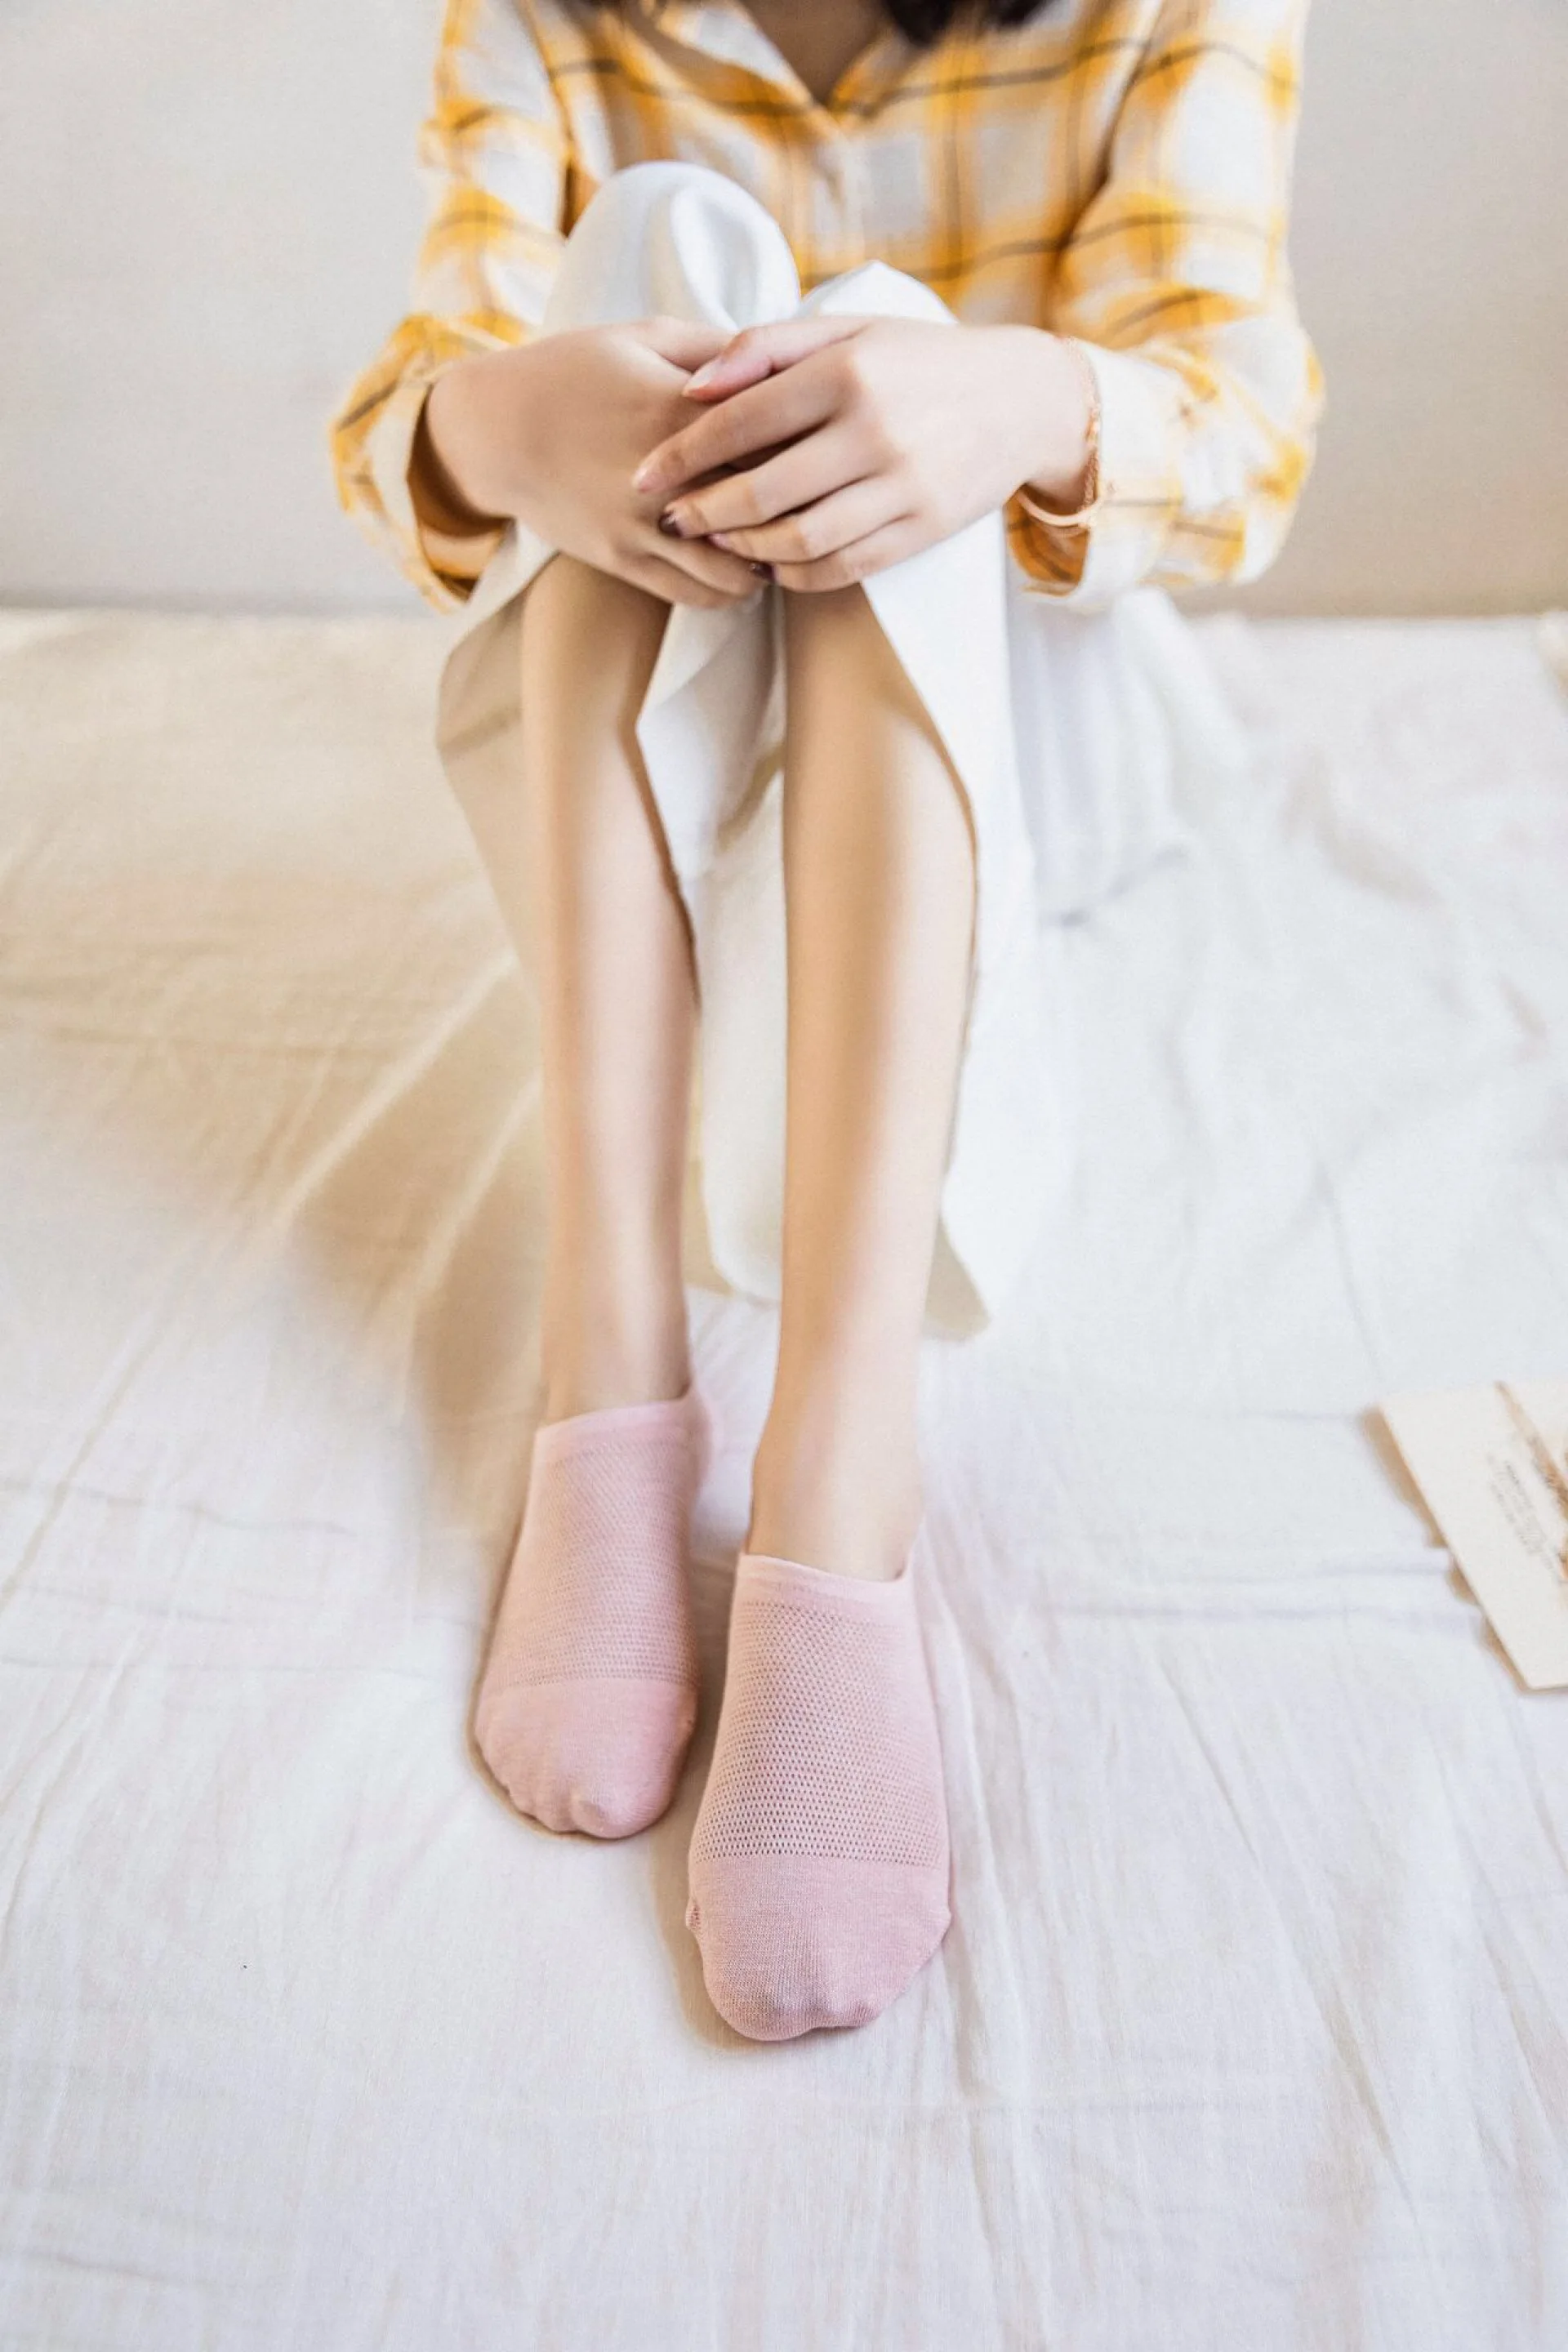 Весной и летом новый выдолбленные женские мужские носки Invisible Ship кремнезема детские Нескользящие носки, дышащие, не сохраняющая запах Носки